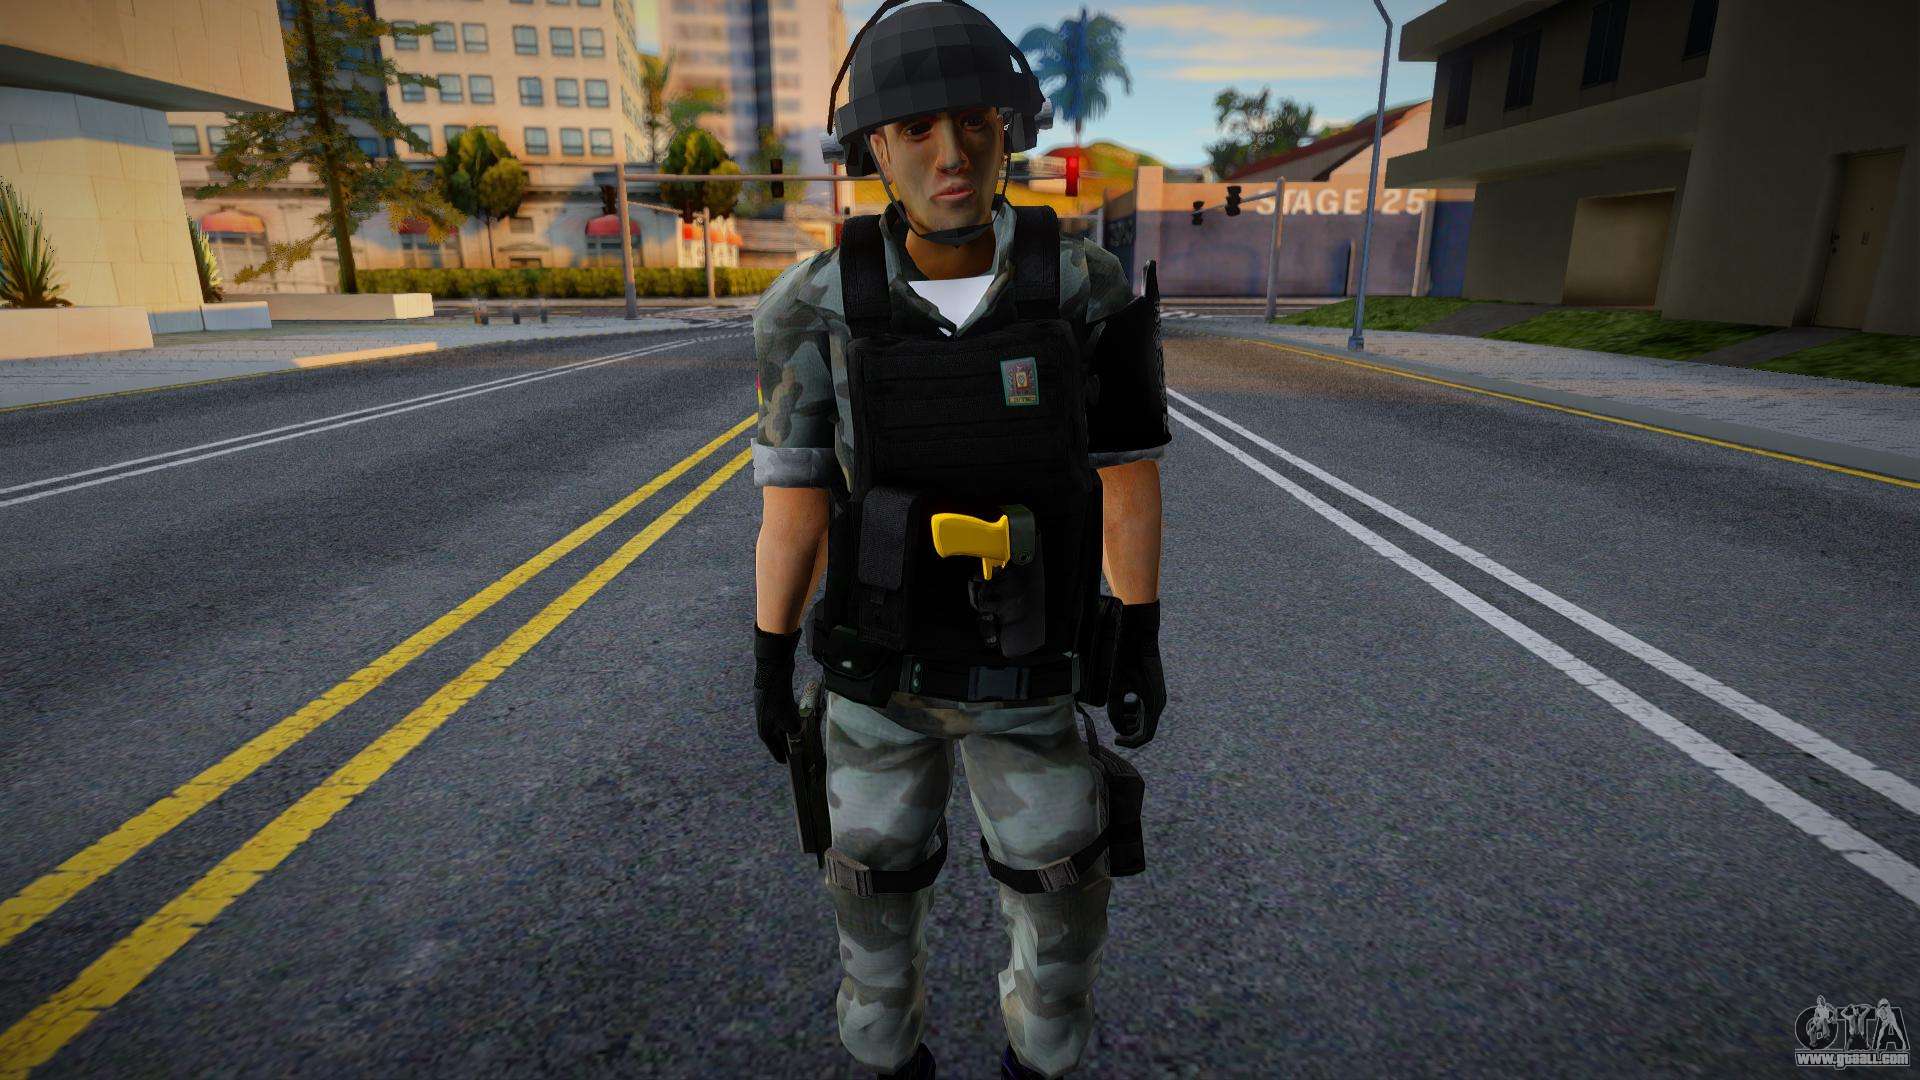 Brazilian Civilian Police V2 for GTA San Andreas